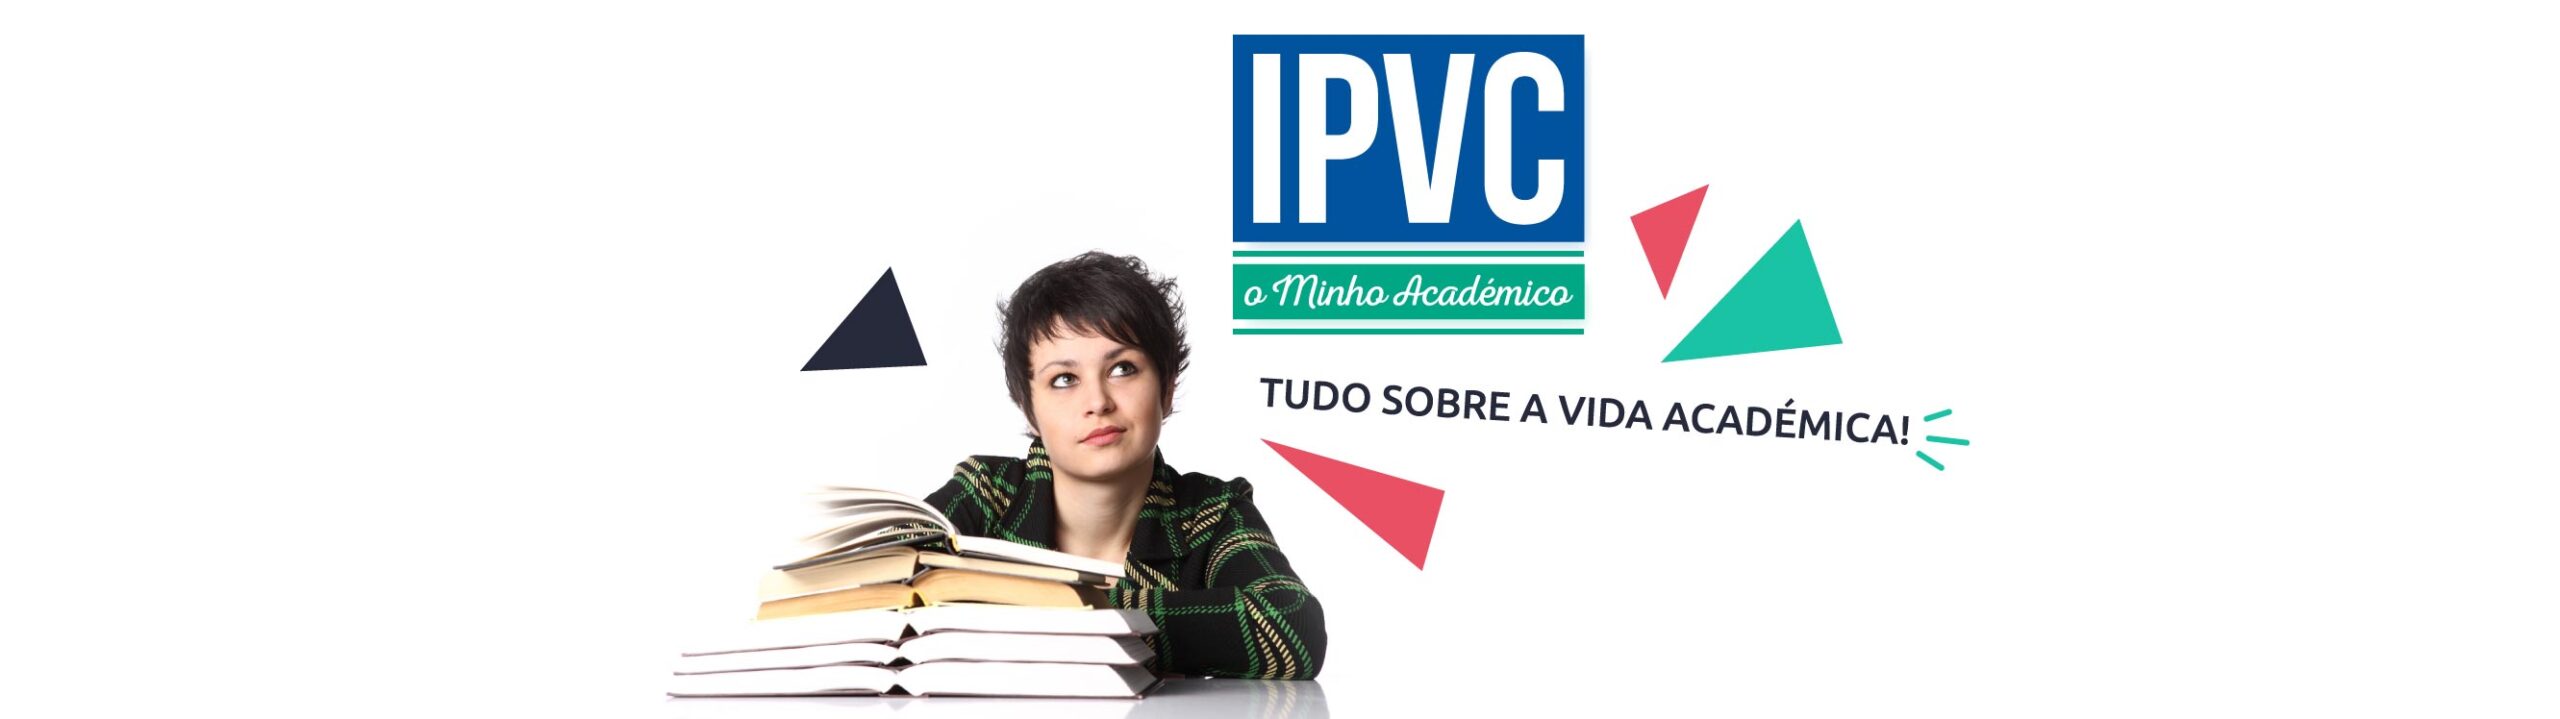 IPVC – O Minho Académico (Ed. 032)